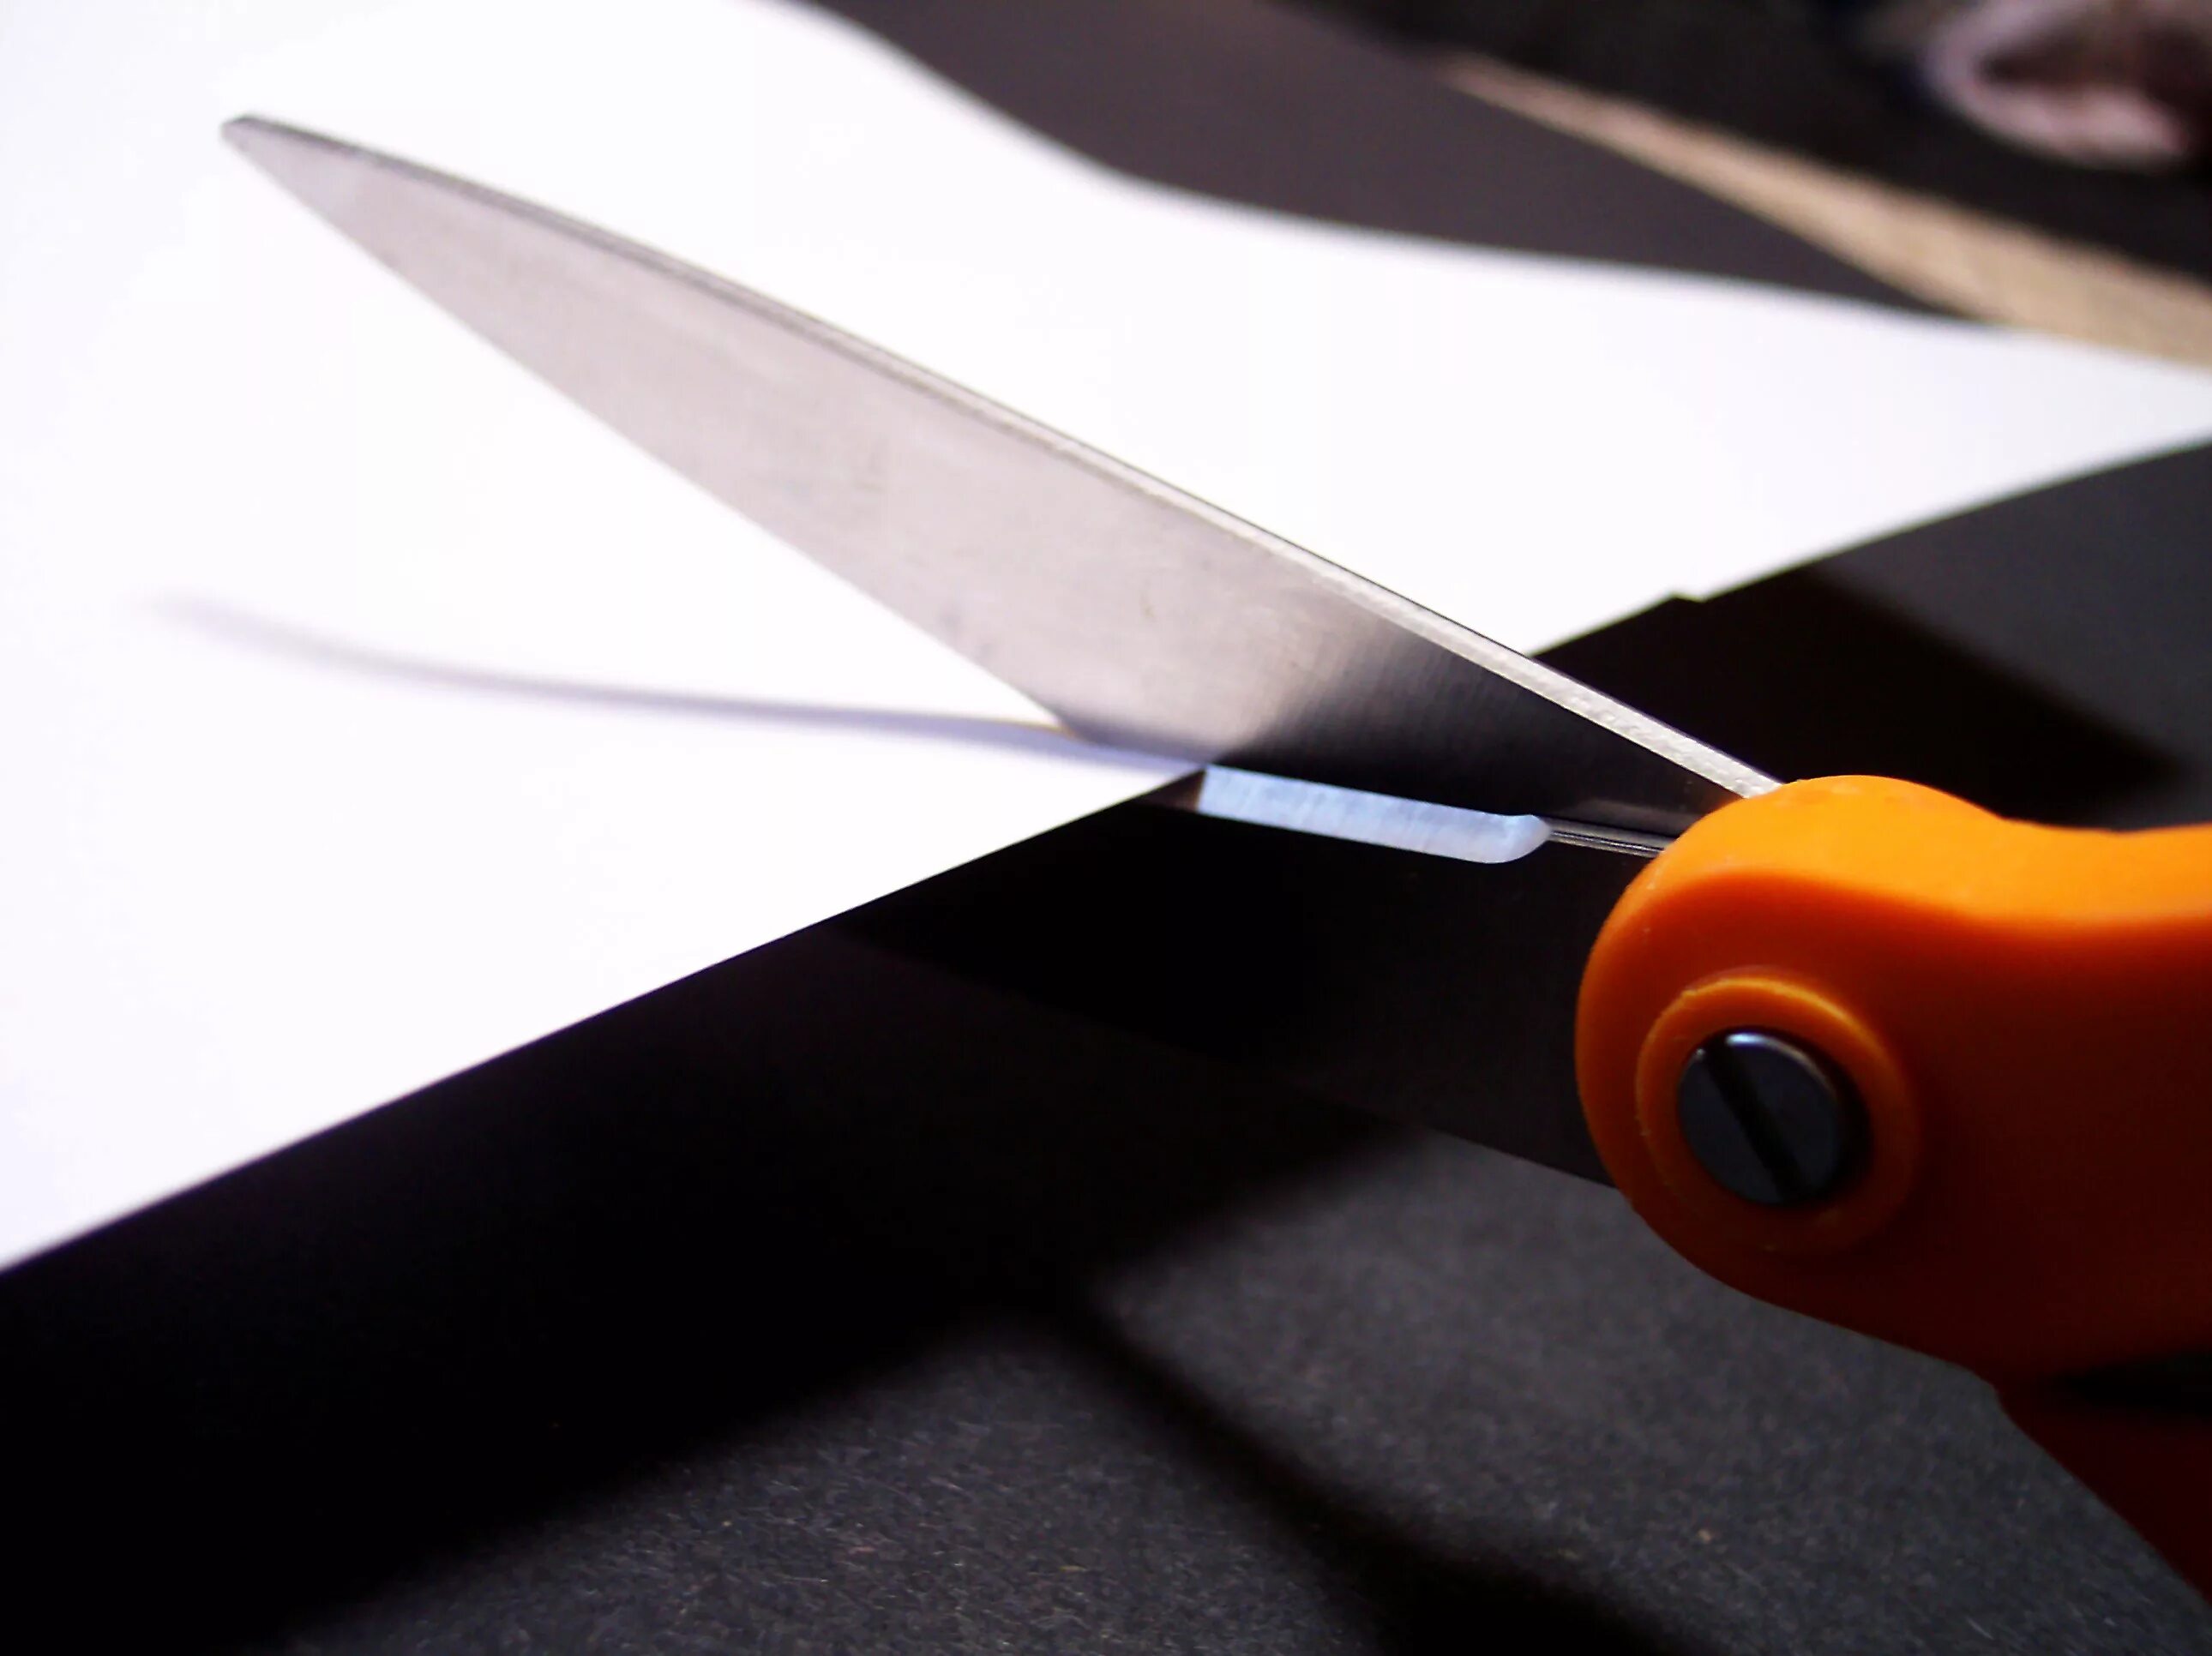 Отрезать ножницами. Разрезание бумаги ножницами. Ножницы режущие бумагу. Ножницы режут бумагу. Cutting scissors